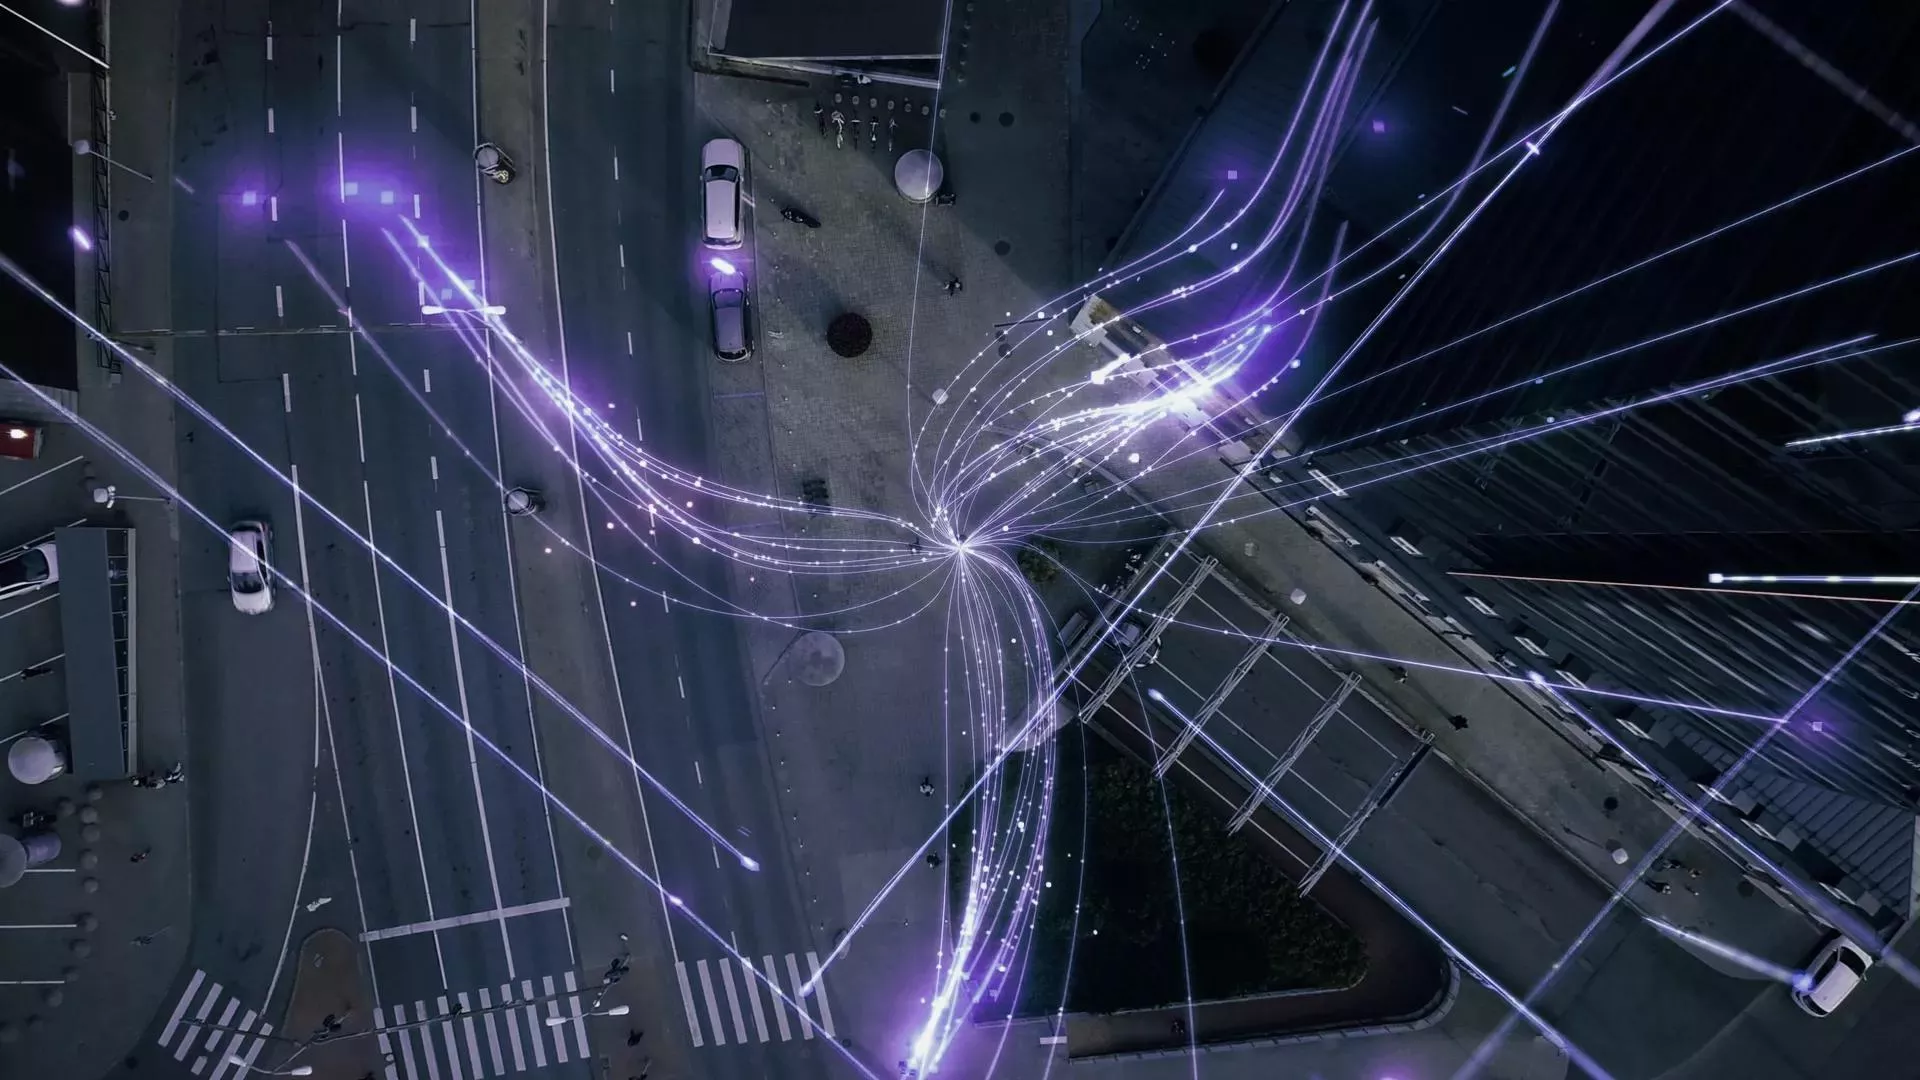 Bovenaanzicht van een straat met data connectiviteit die bepaalde richtingen opstralen.